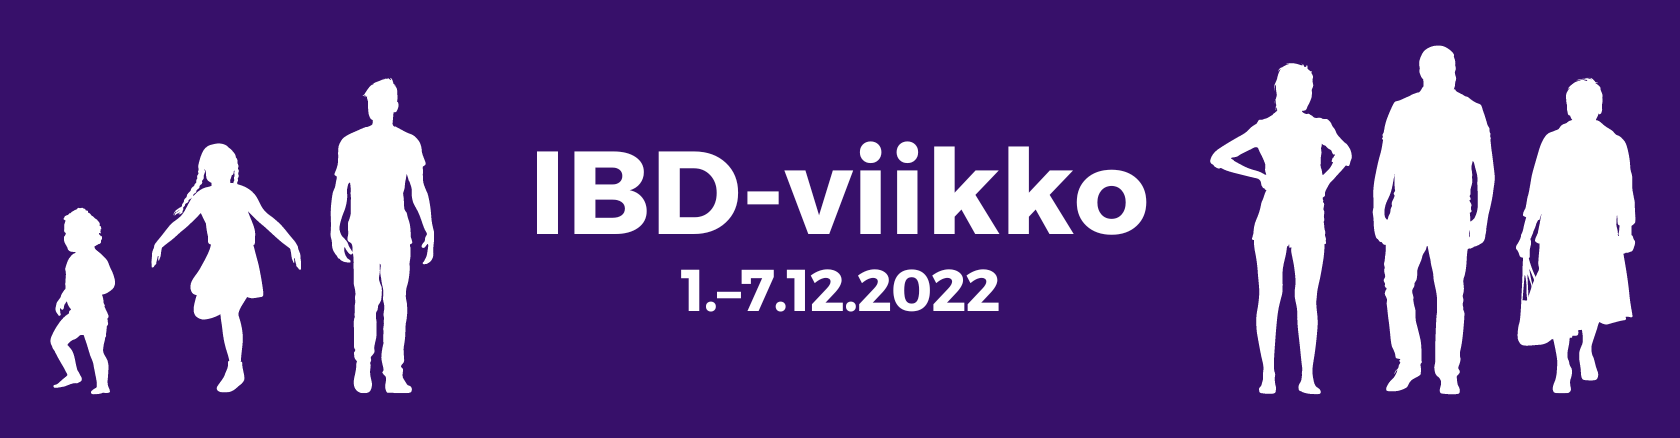 Keskellä lukee: IBD-viikko 1.-7.12.2022. Reunoissa violetilla taustalla valkoiset silhuetit eri-ikäisistä ihmishahmoista.